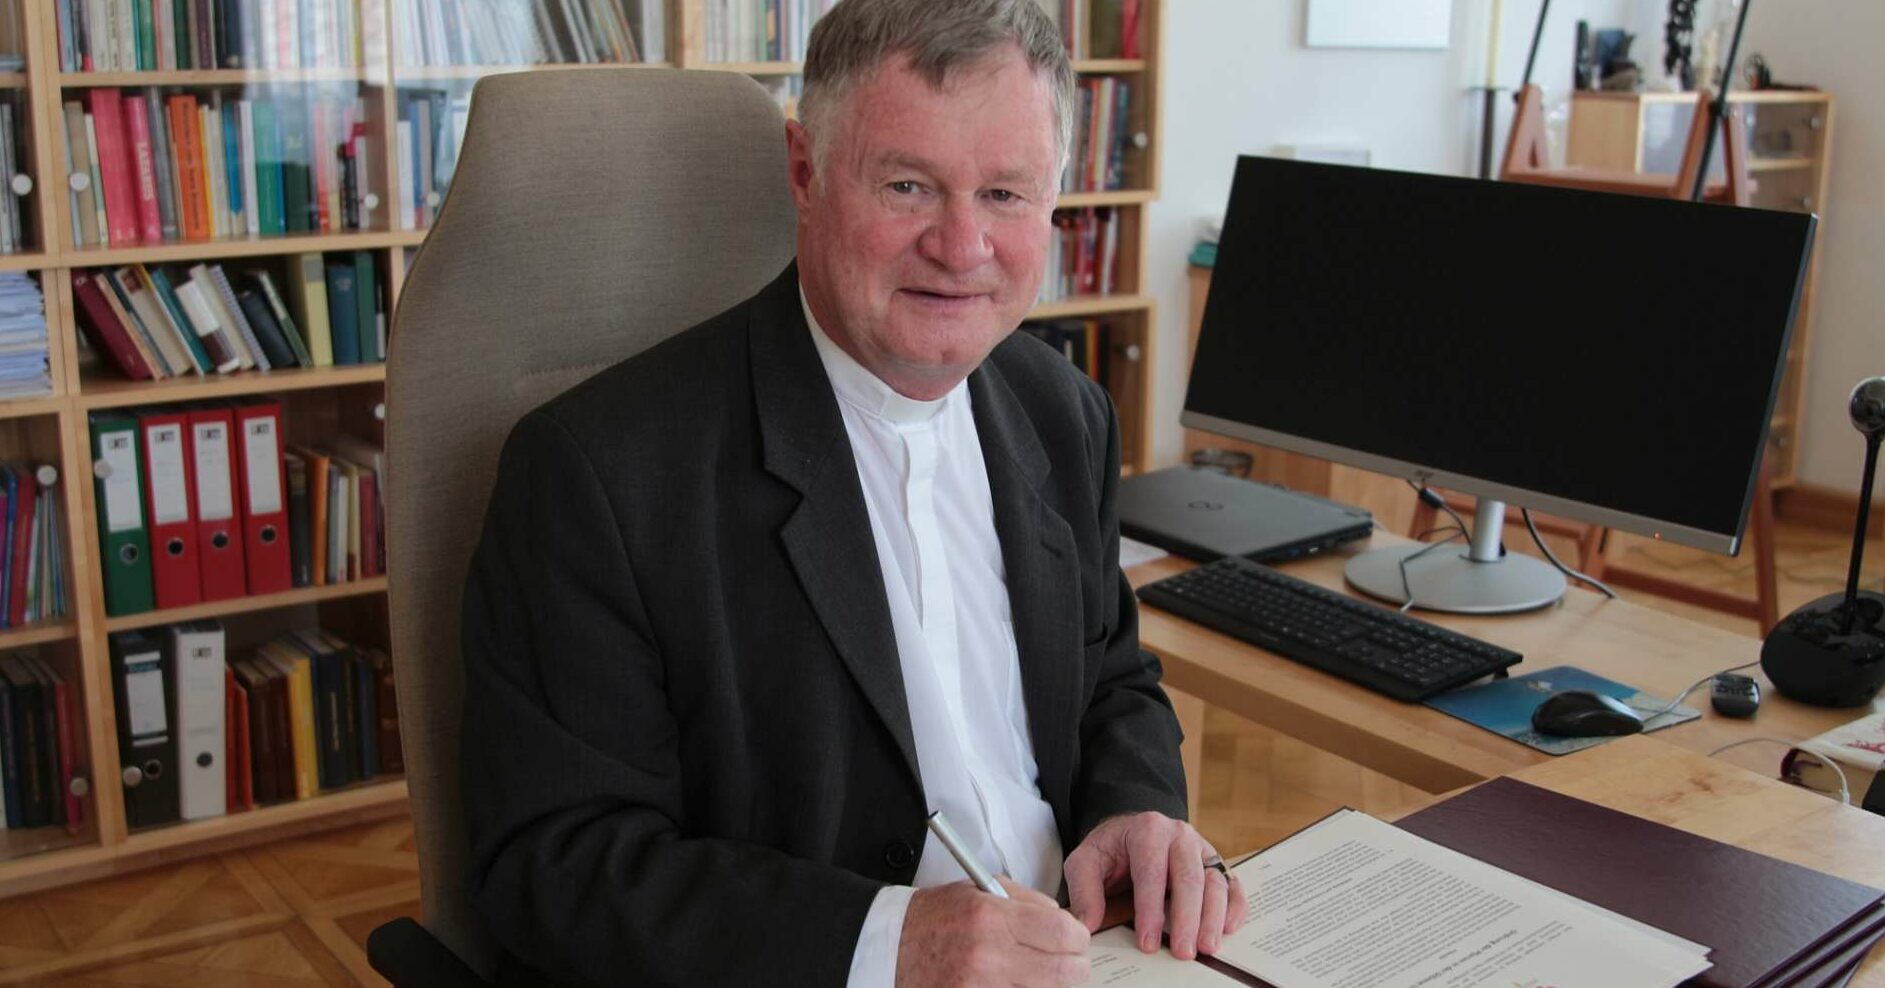 Am 4. Mai, dem Gedenktag des Hl. Florian, unterzeichnete Diözesanbischof Manfred Scheuer die Gesetzestexte für die Umsetzung der neuen Pfarrstruktur. Mit der Veröffentlichung im Linzer Diözesanblatt sind sie nun rechtsgültig.